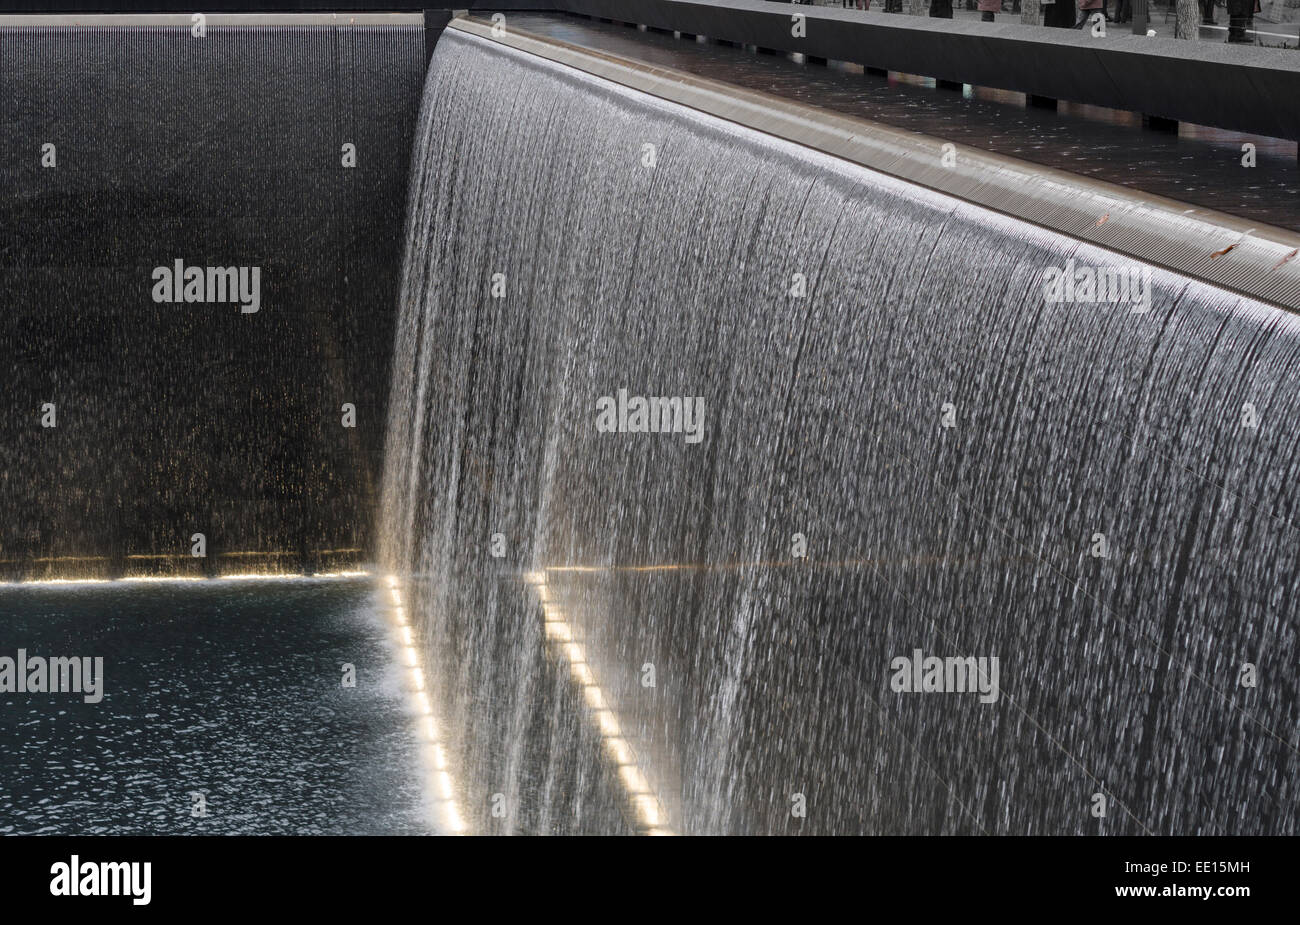 Mémorial du 11 septembre falls détails. Détail de la cascade qui compose une partie clé du World Trade Center 9/11 memorial Banque D'Images